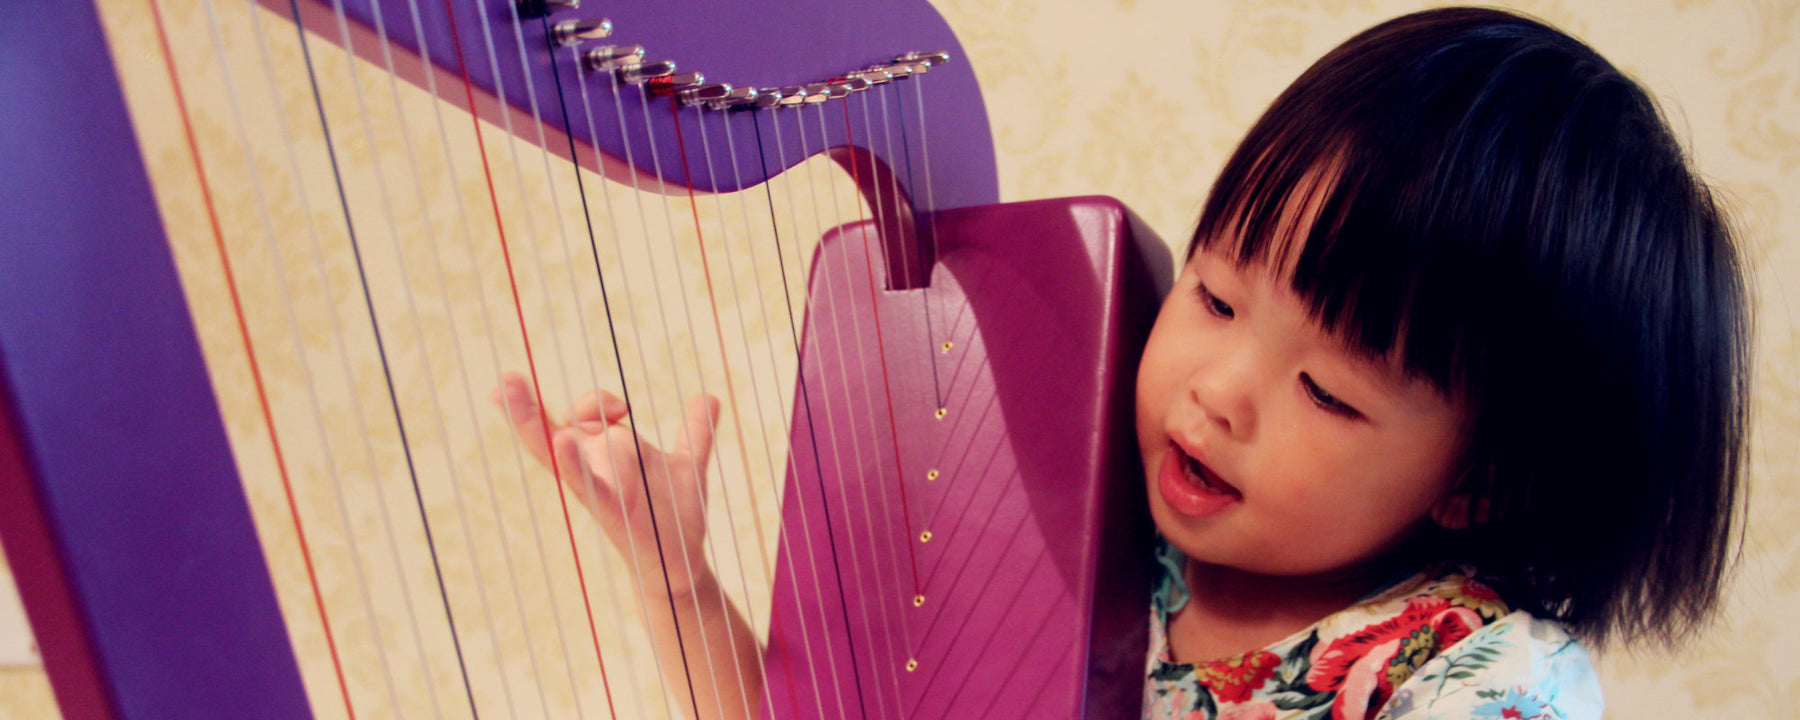 Best Musical Instruments for Children